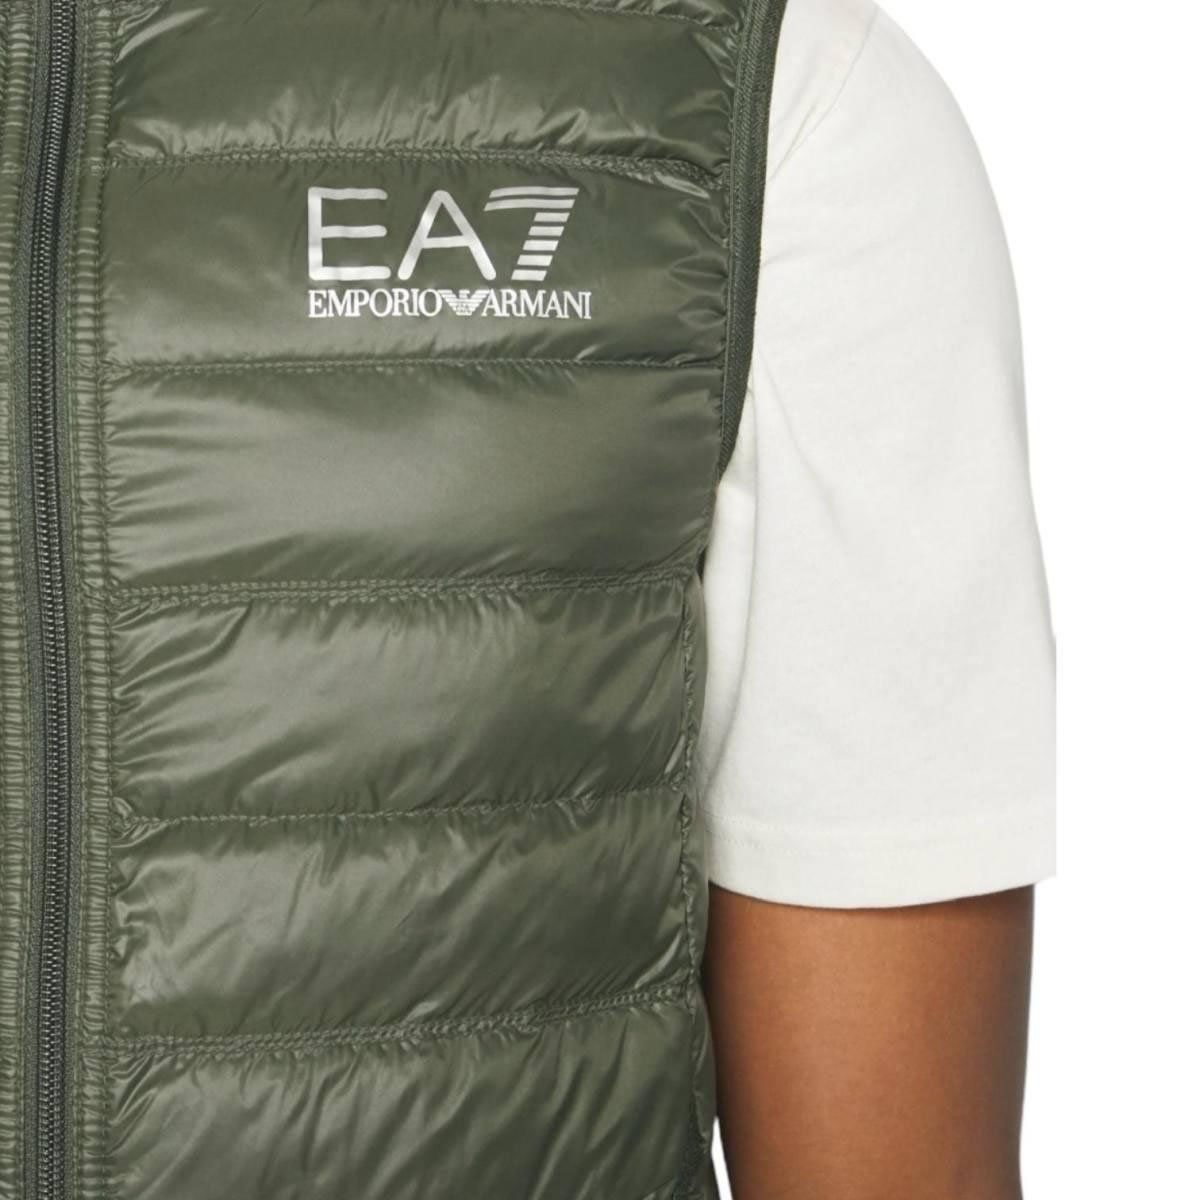 EA7 Jackets Green Groen